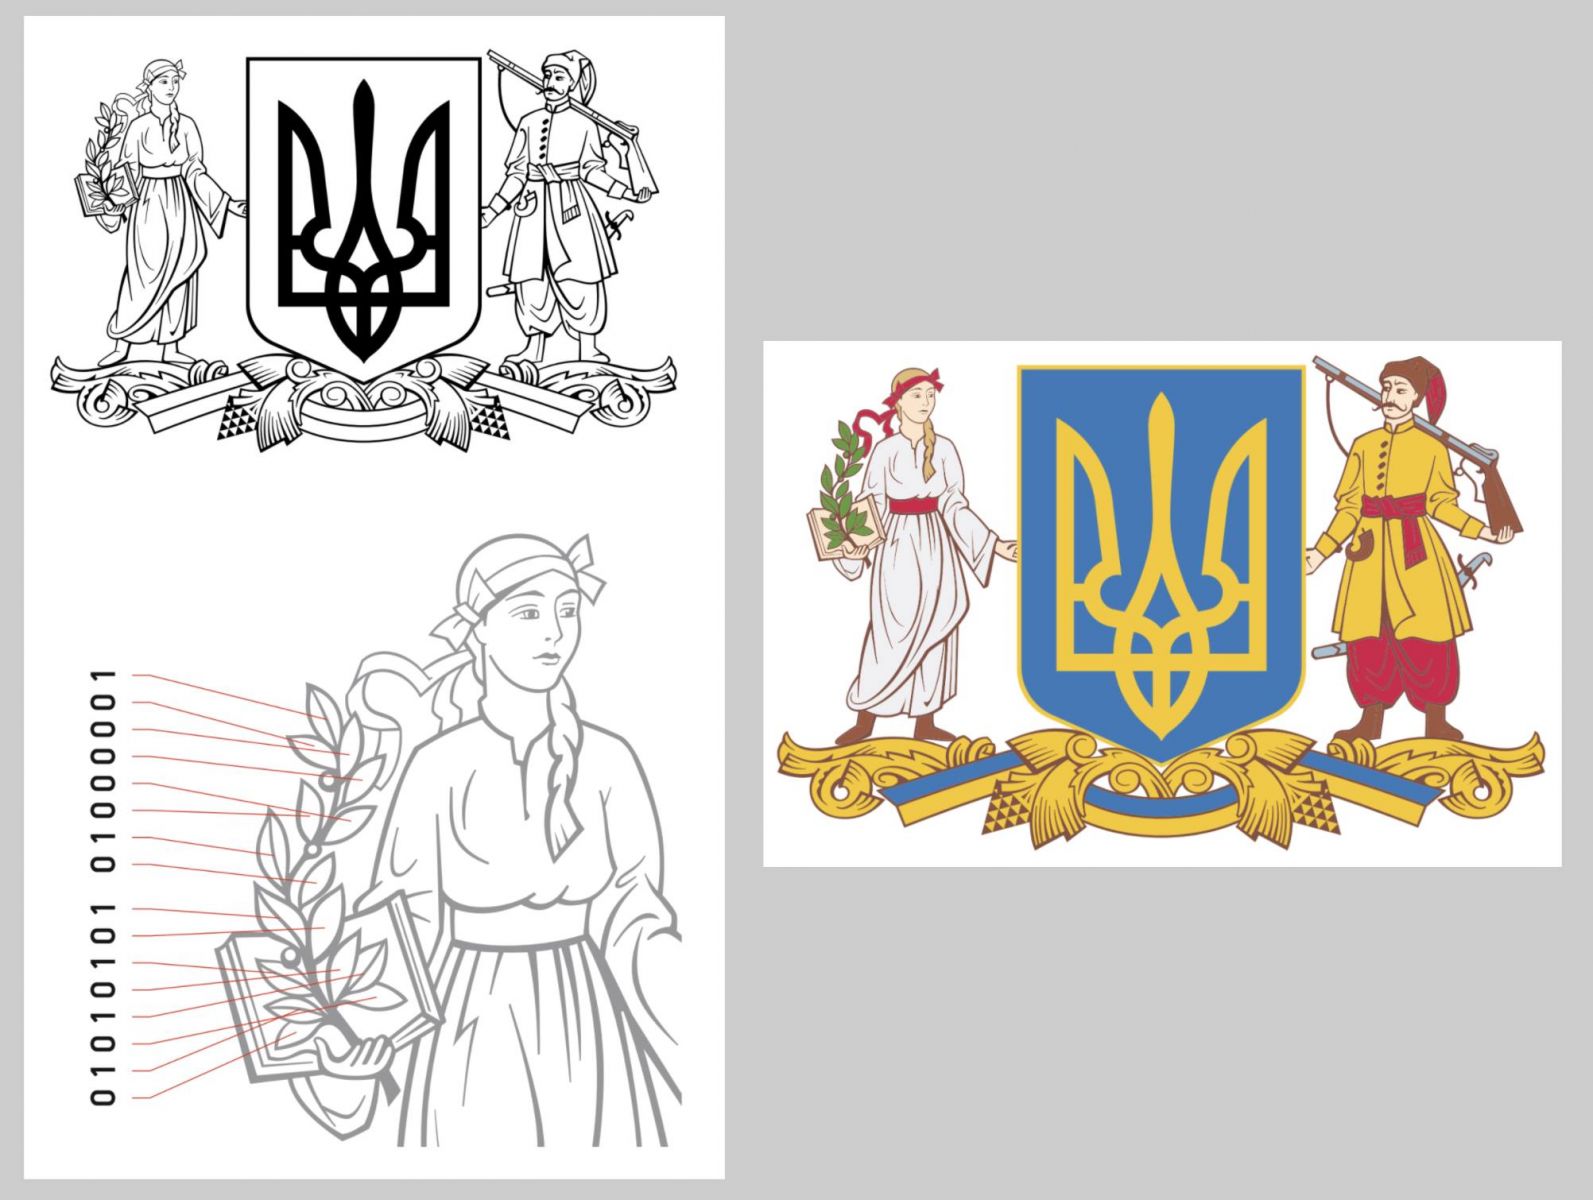 Бинарный код и девушка с веткой оливы — участники конкурса показали, каким мог быть большой герб Украины